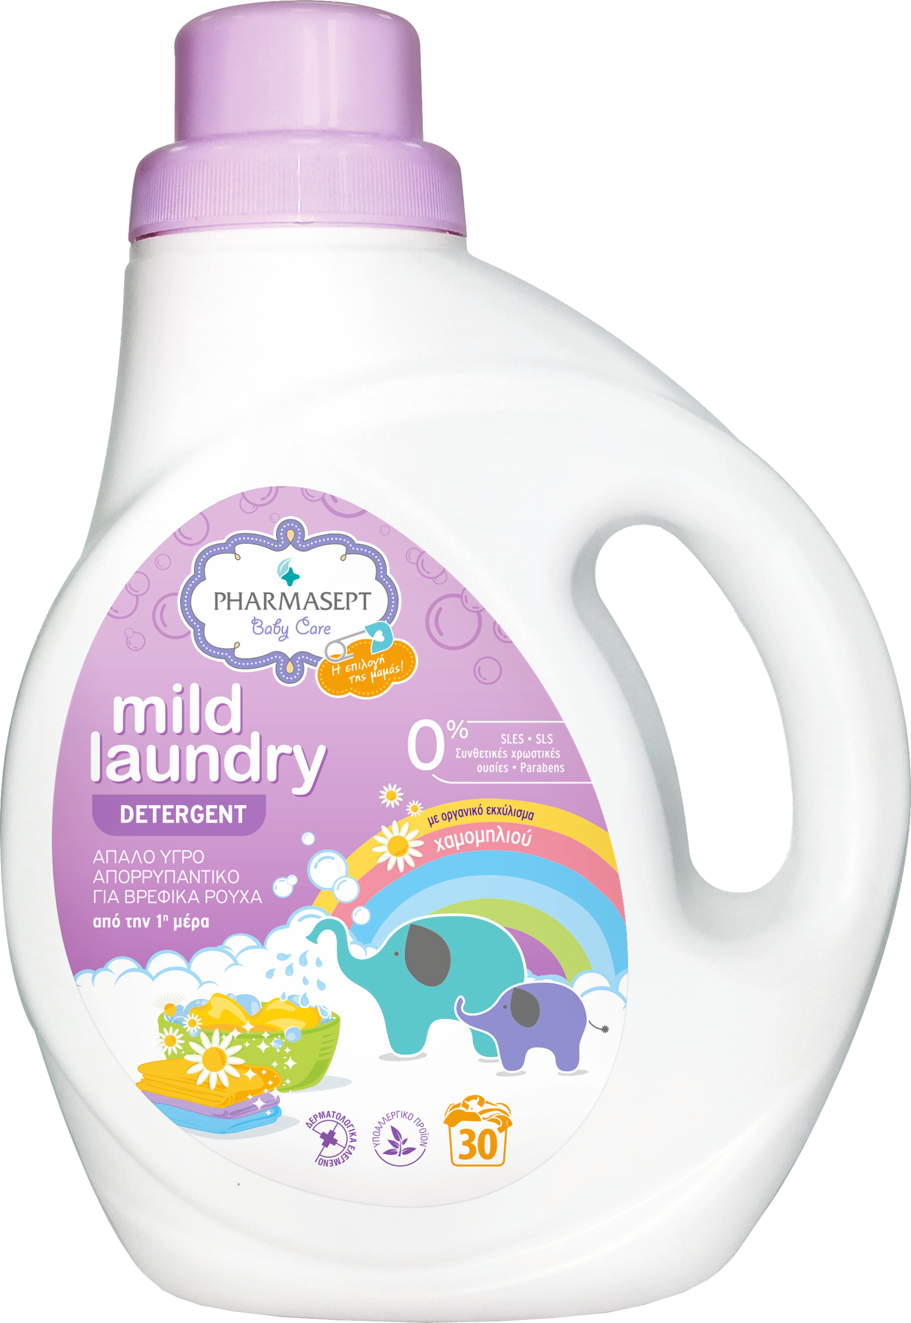 Pharmasept Mild Laundry Detergent 1lt